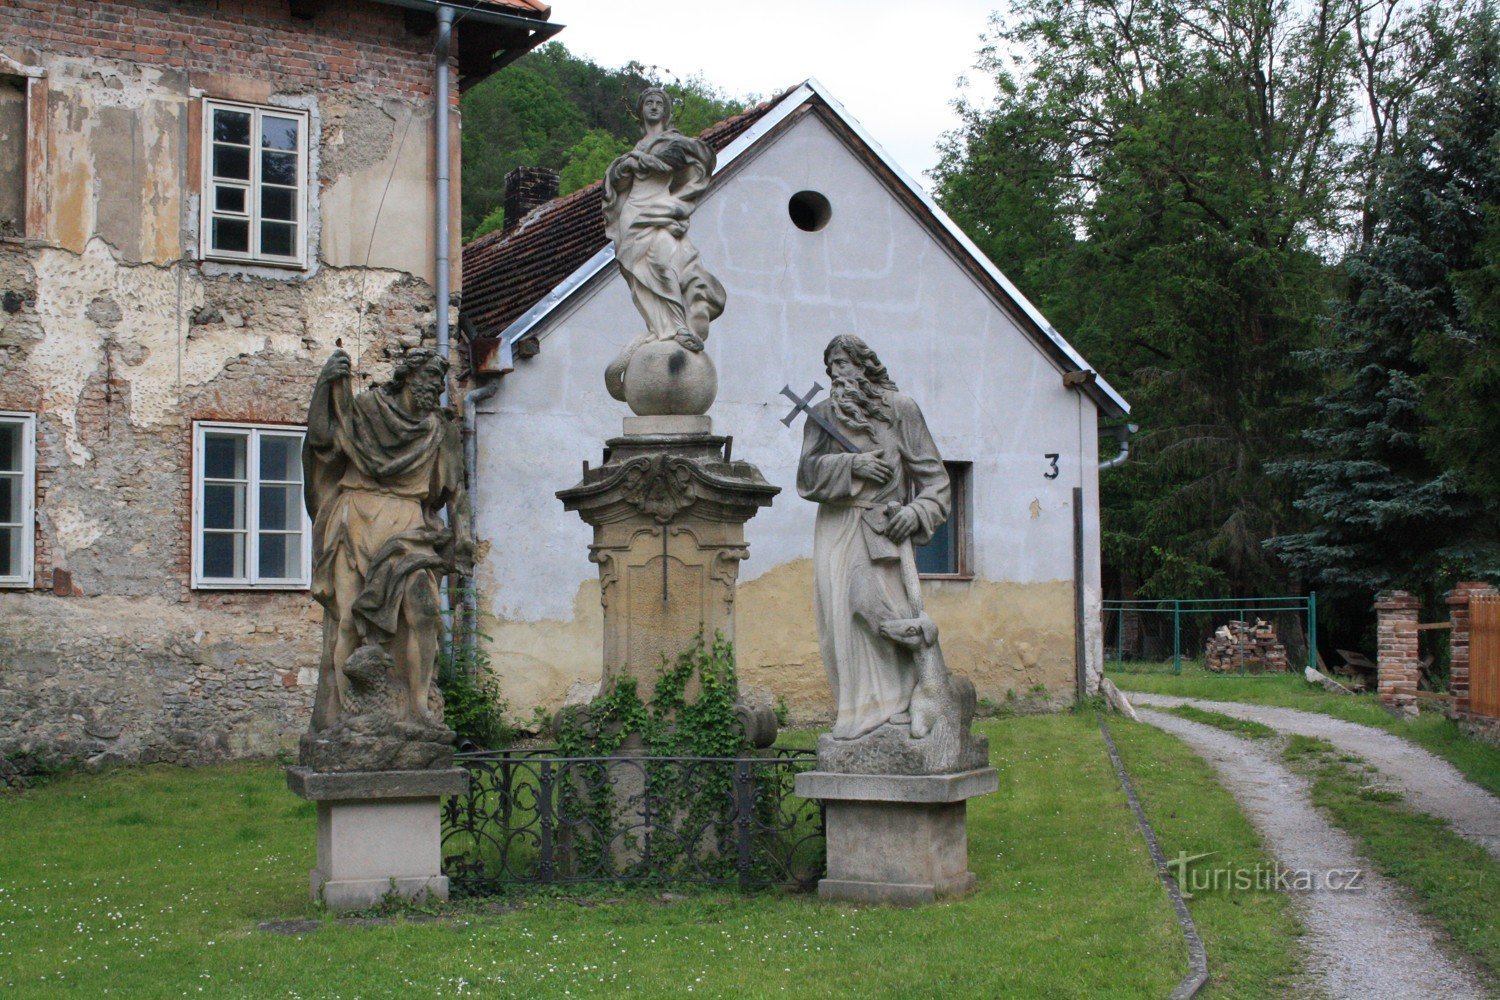 Szent János a szikla alatt és a szobor a faluban